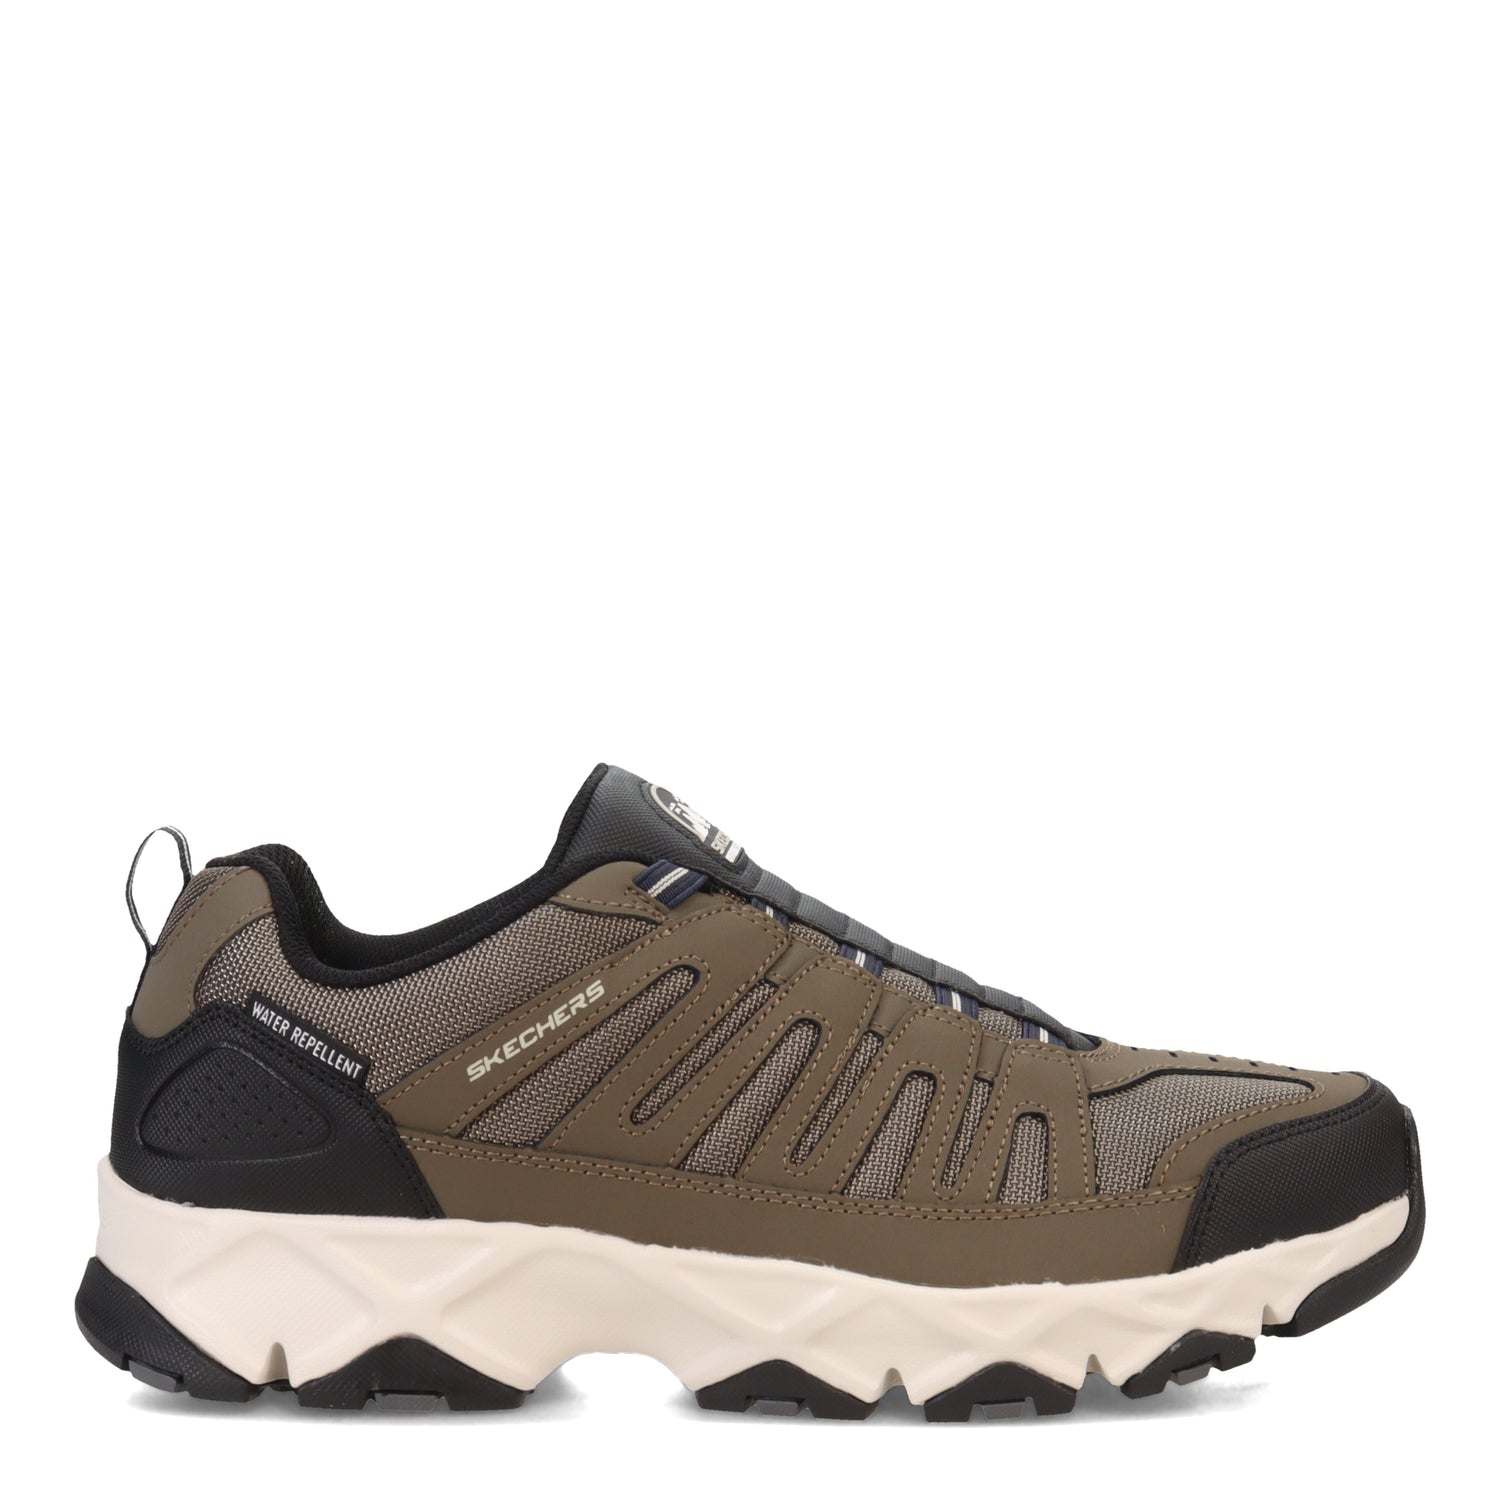 Peltz Shoes  Men's Skechers Relaxed Fit: Crossbar - Cedar Hiking Shoe - Wide Width Brown 237345WW-BRN